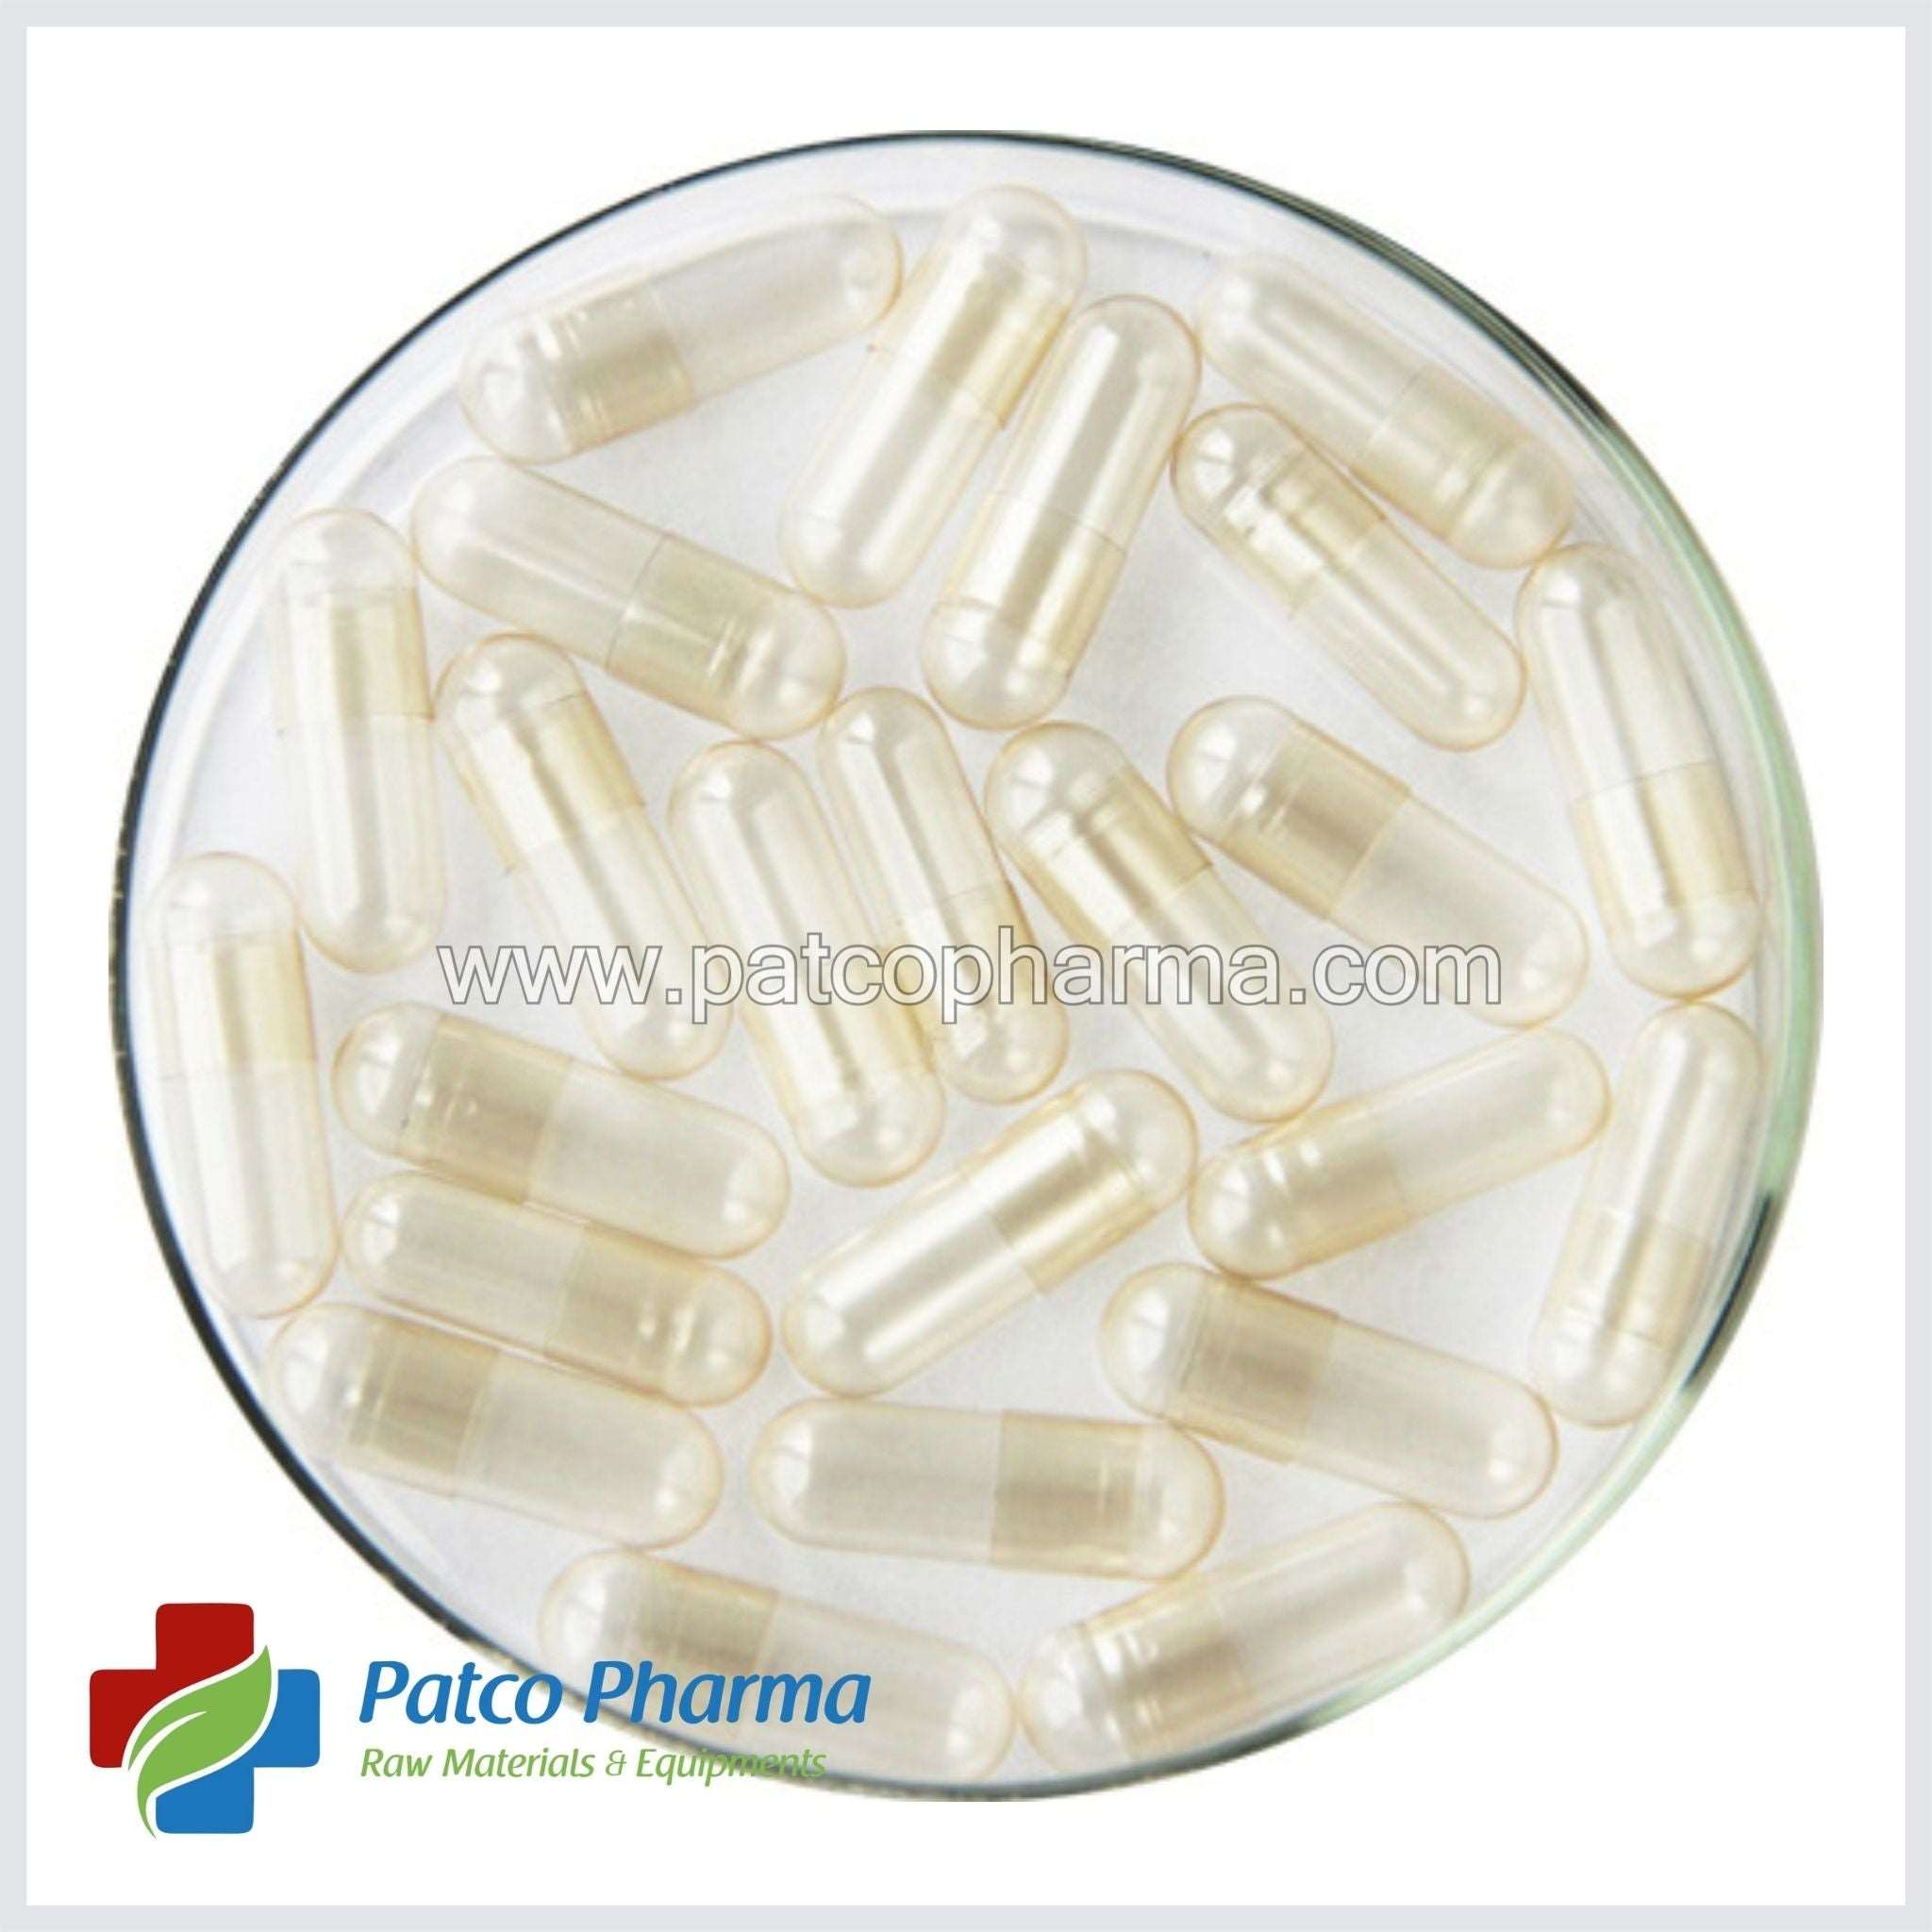 Empty Gelatin Capsule - Size 1, Patco Pharma, Gelatin Capsules, empty-gelatin-capsule-size-1, 400 mg, size 1 capsule, Patco Pharma